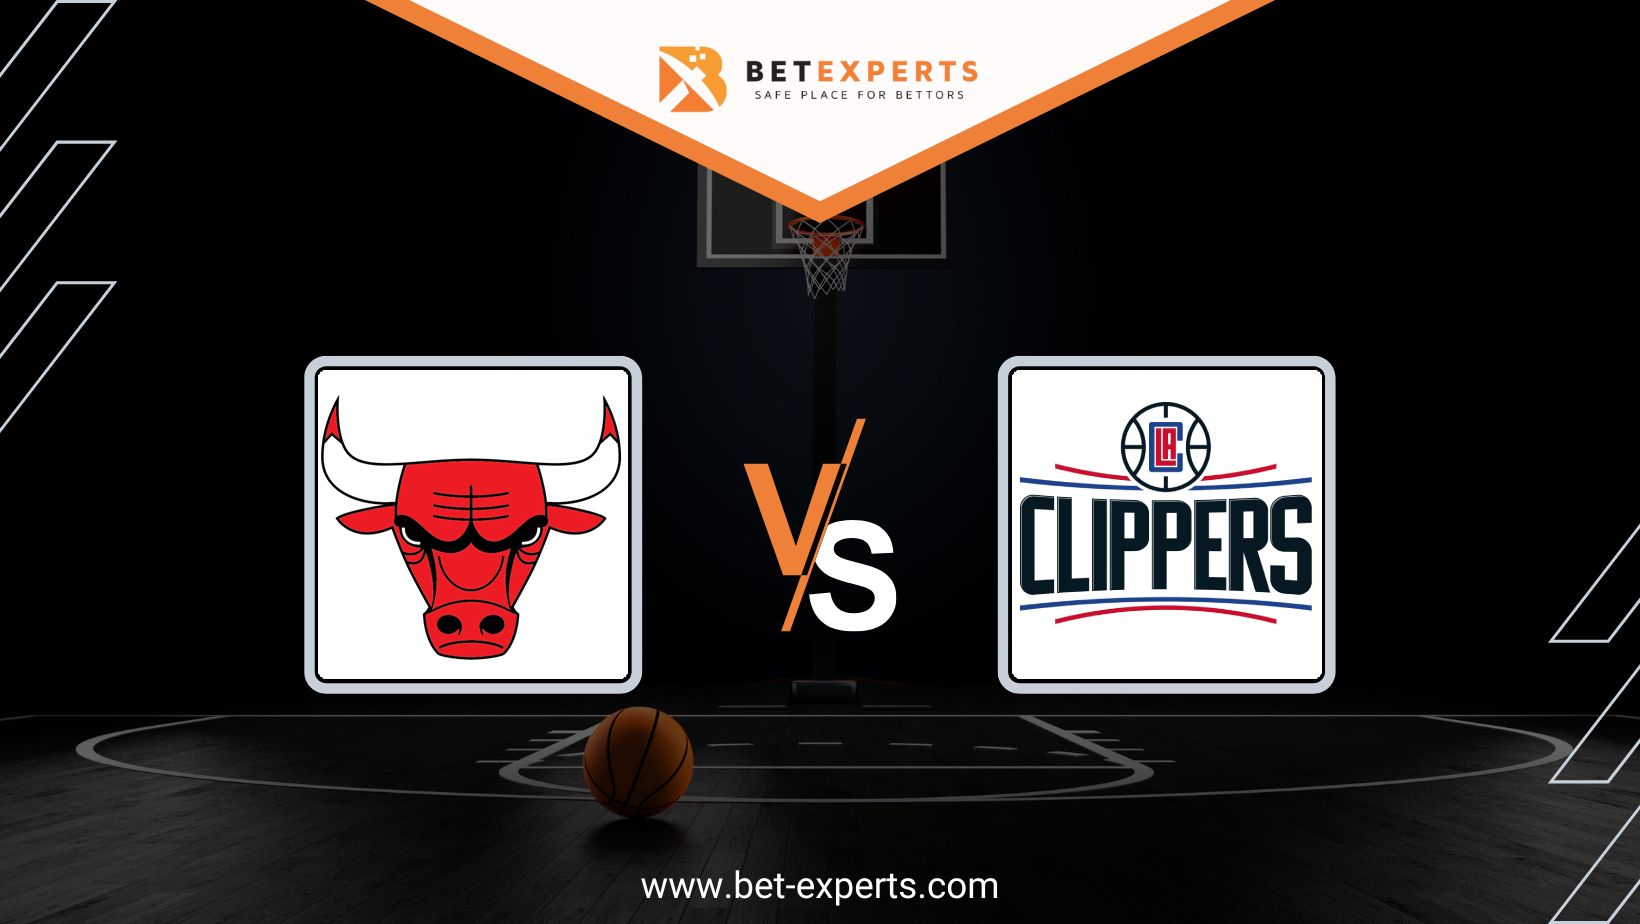 Chicago Bulls vs LA Clippers Prediction